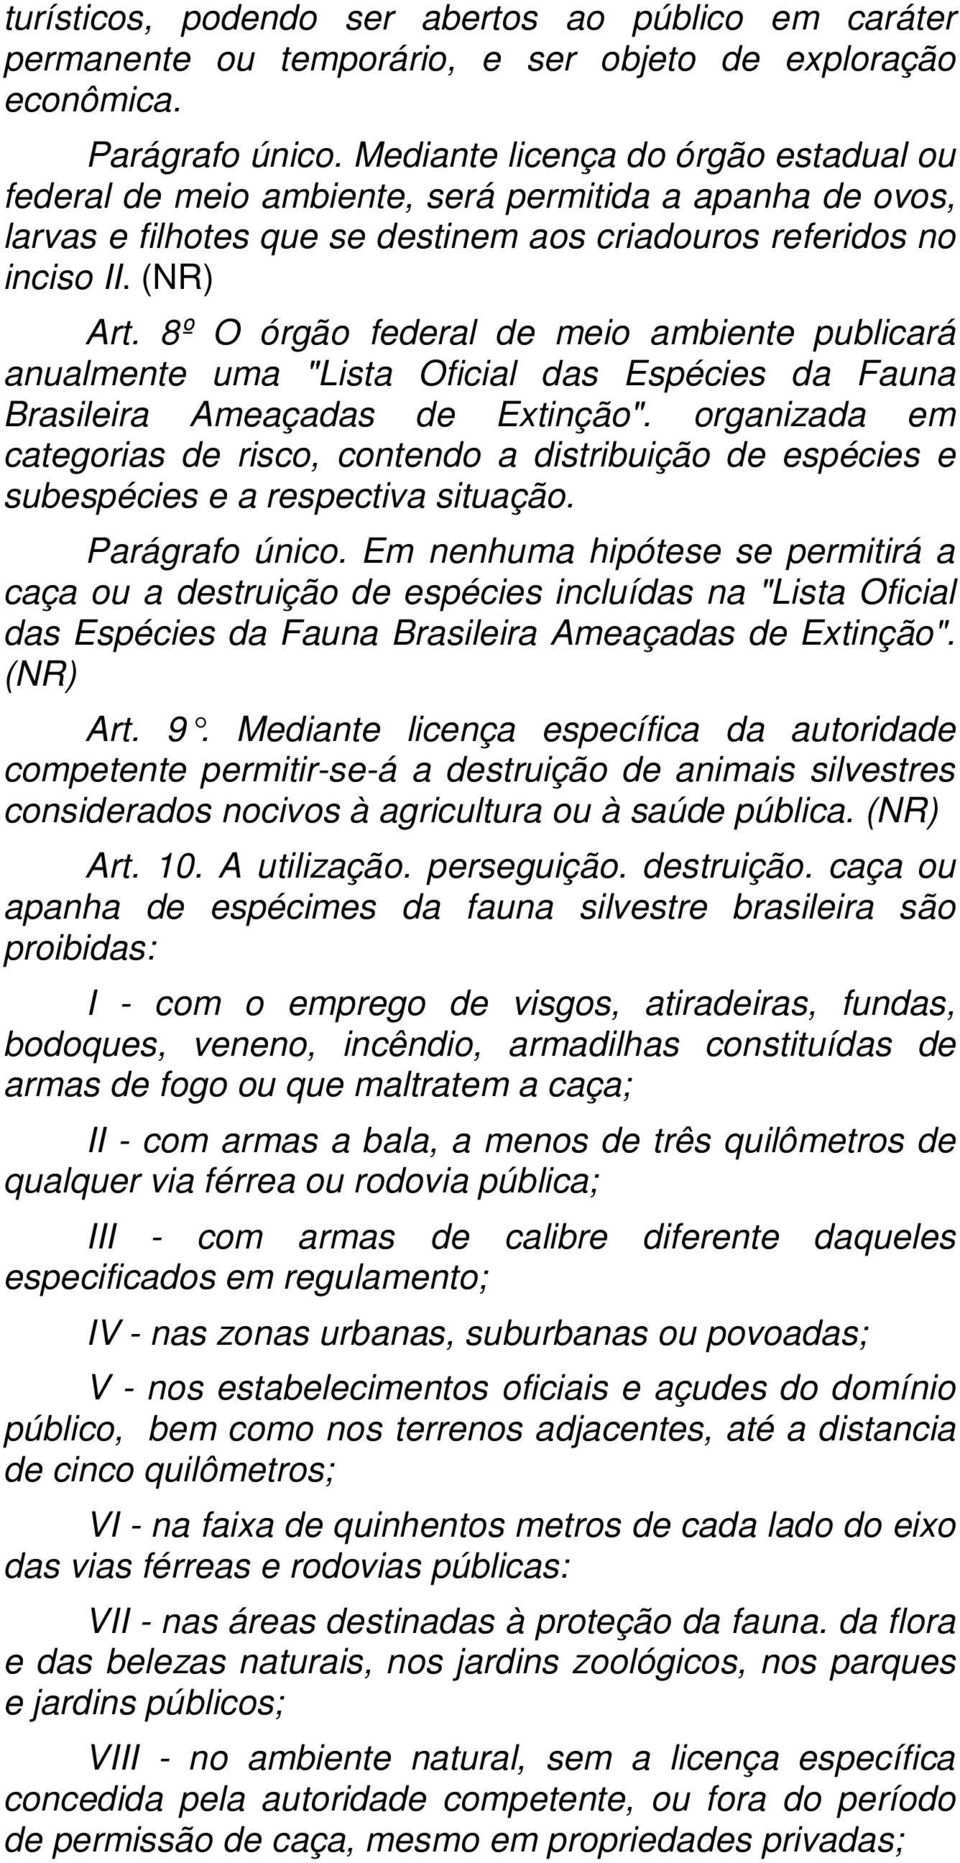 8º O órgão federal de meio ambiente publicará anualmente uma "Lista Oficial das Espécies da Fauna Brasileira Ameaçadas de Extinção".